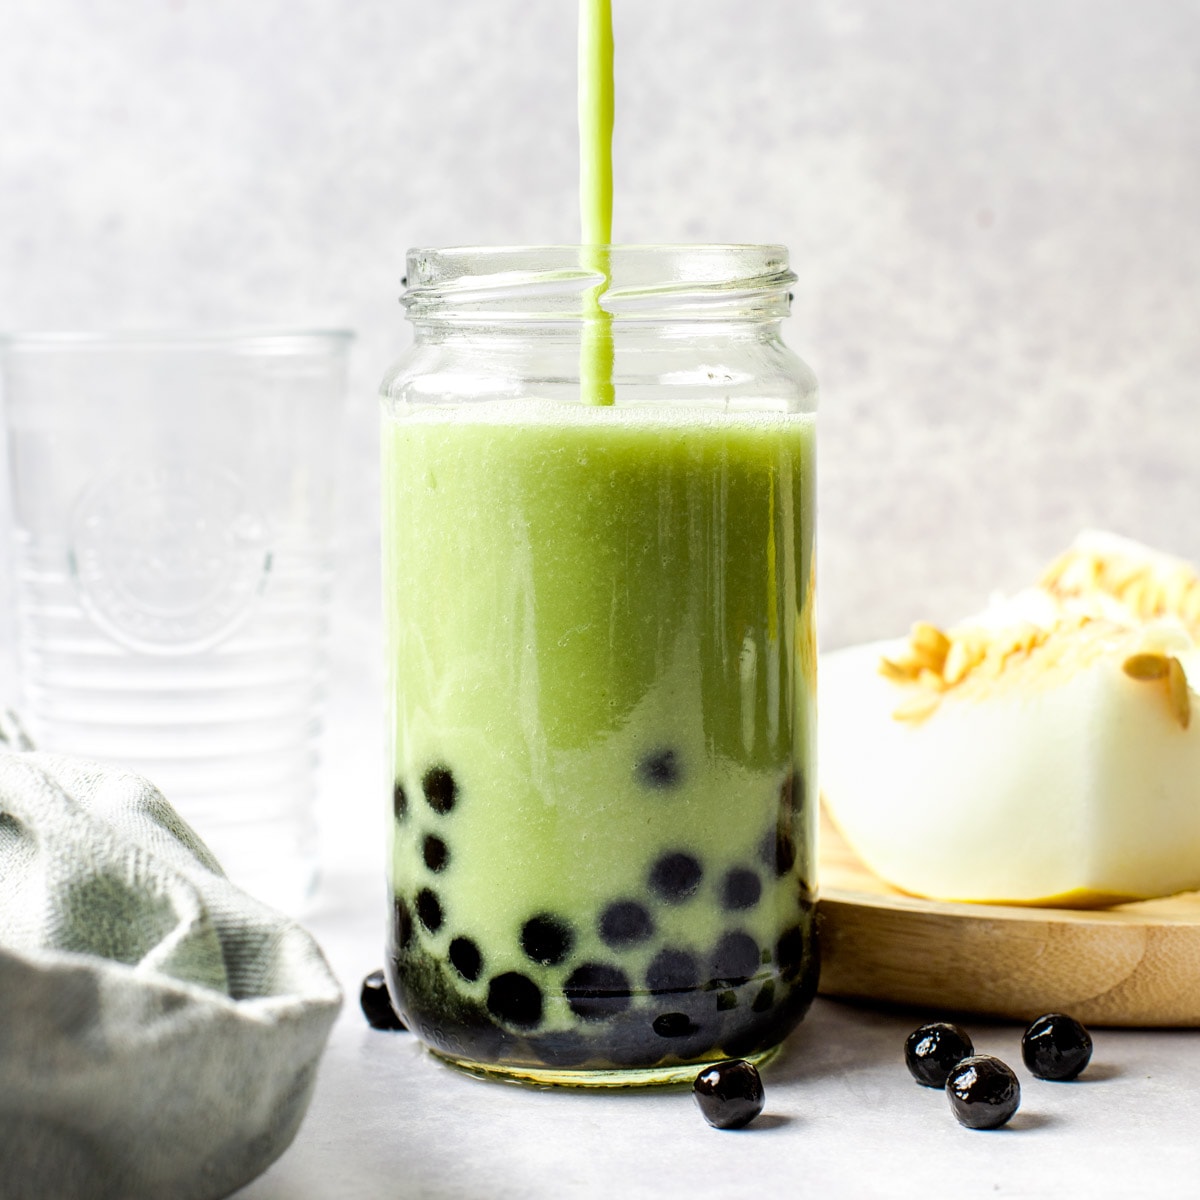 Honeydew Melon Milk Tea - Boba - My Vegan Minimalist